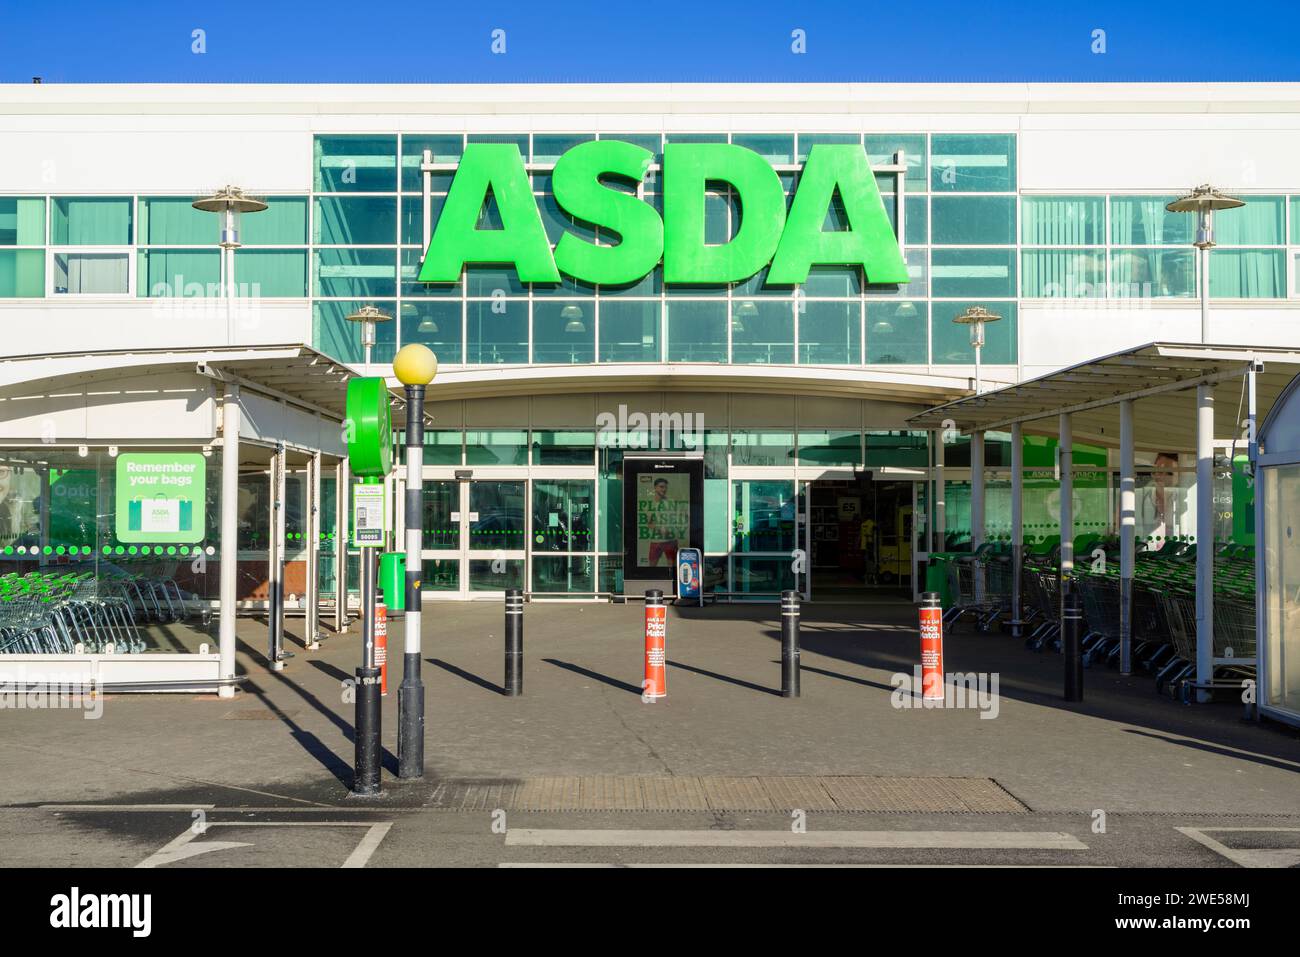 Negozio Asda ingresso negozio Asda insegna logo Asda uk Asda supermercato Derbyshire inghilterra regno unito gb europa Foto Stock